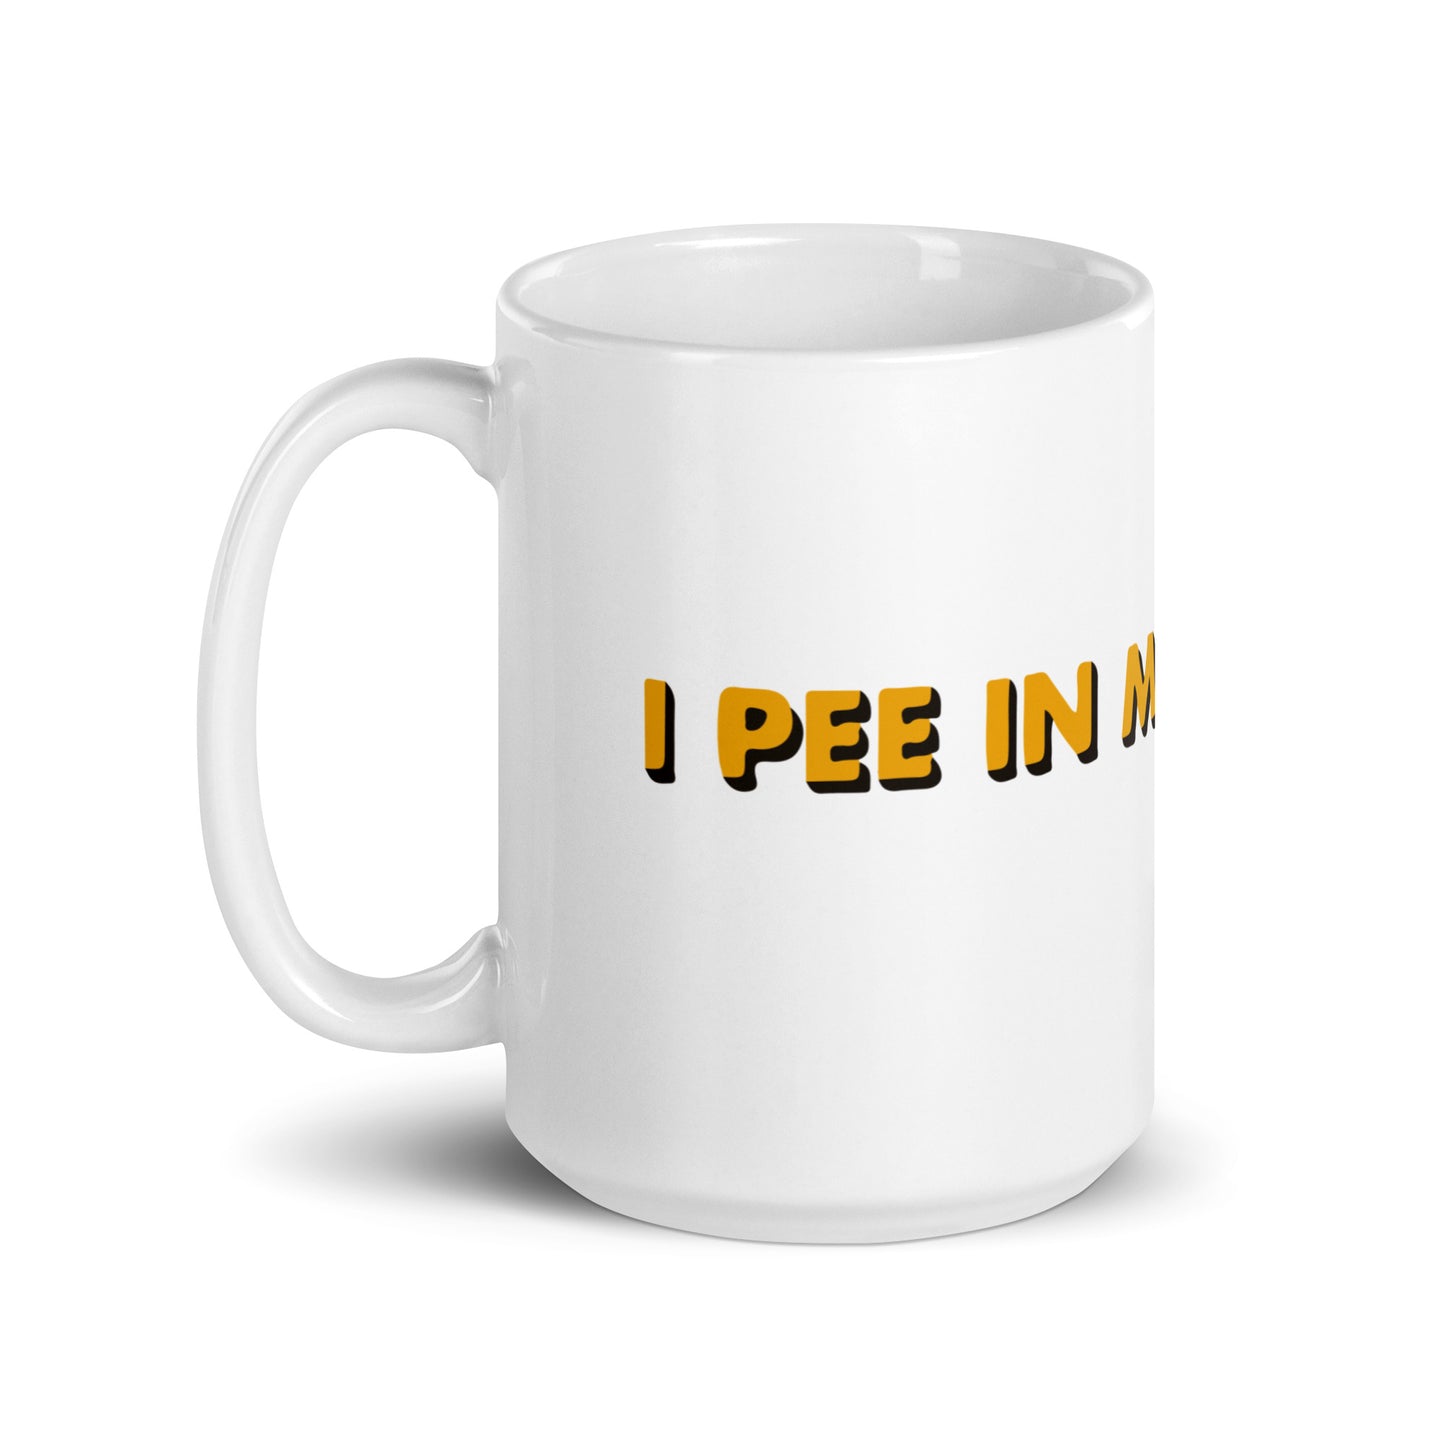 I Pee Mug